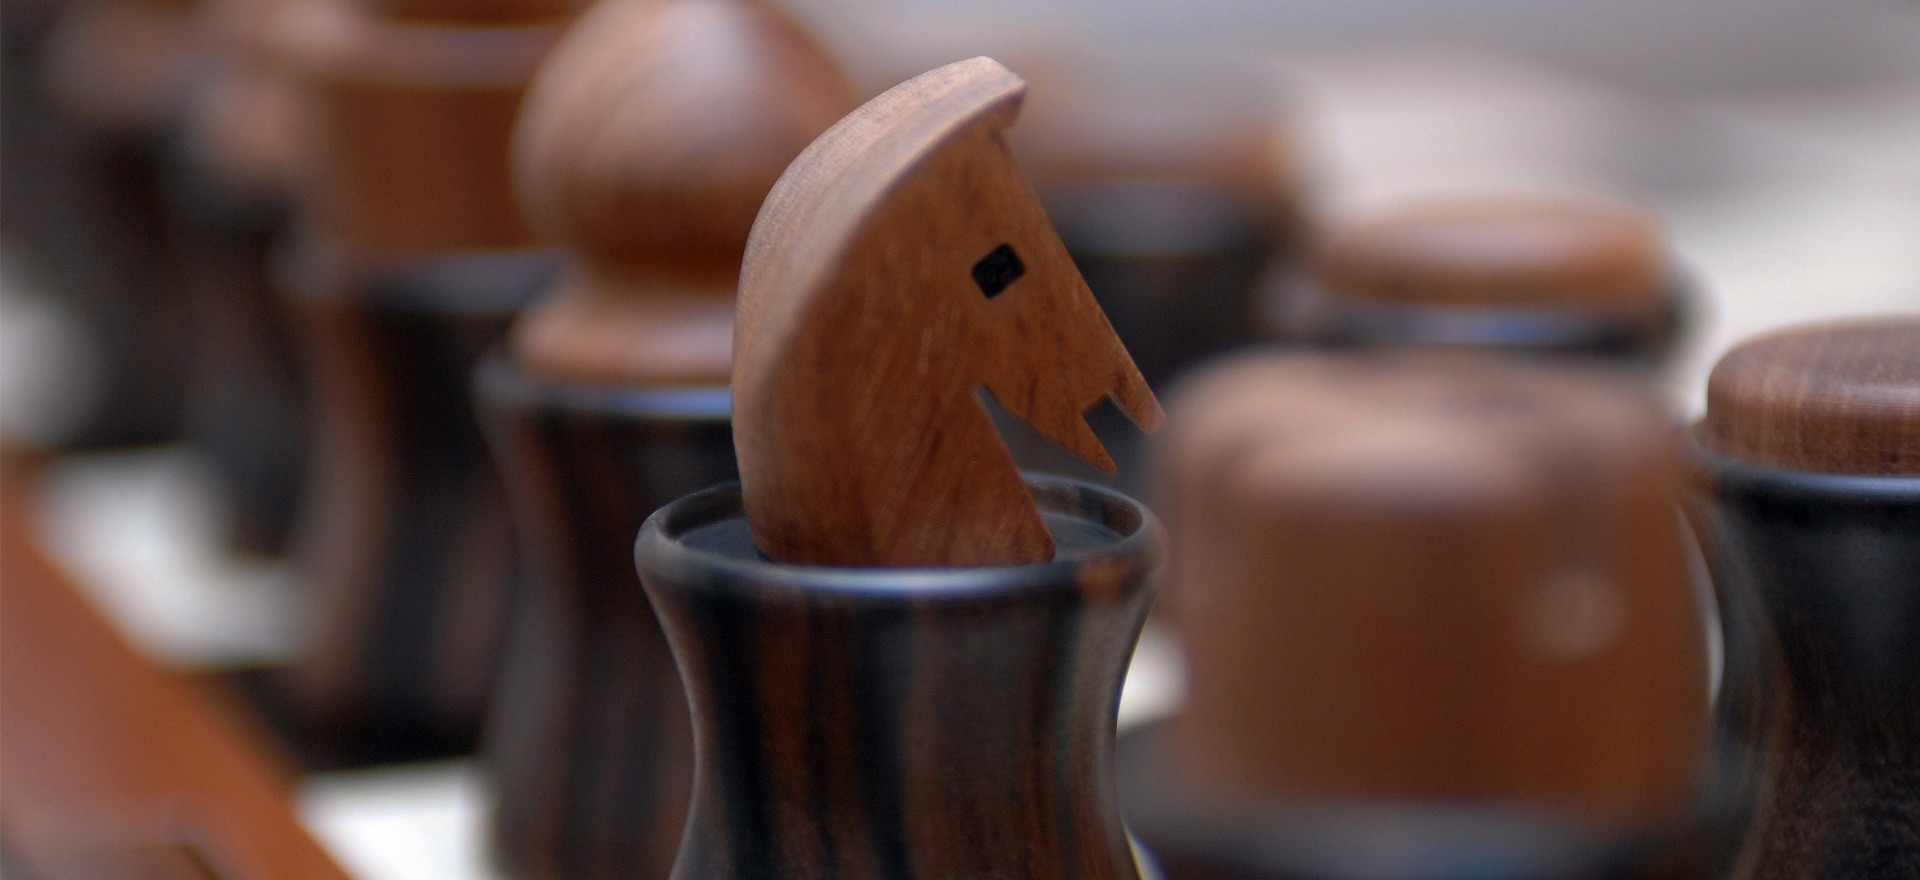 Деревянный набор игр, включающий кости, шашки, домино и шахматы, доступный с кожаным футляром, из каталога Promemoria | Promemoria